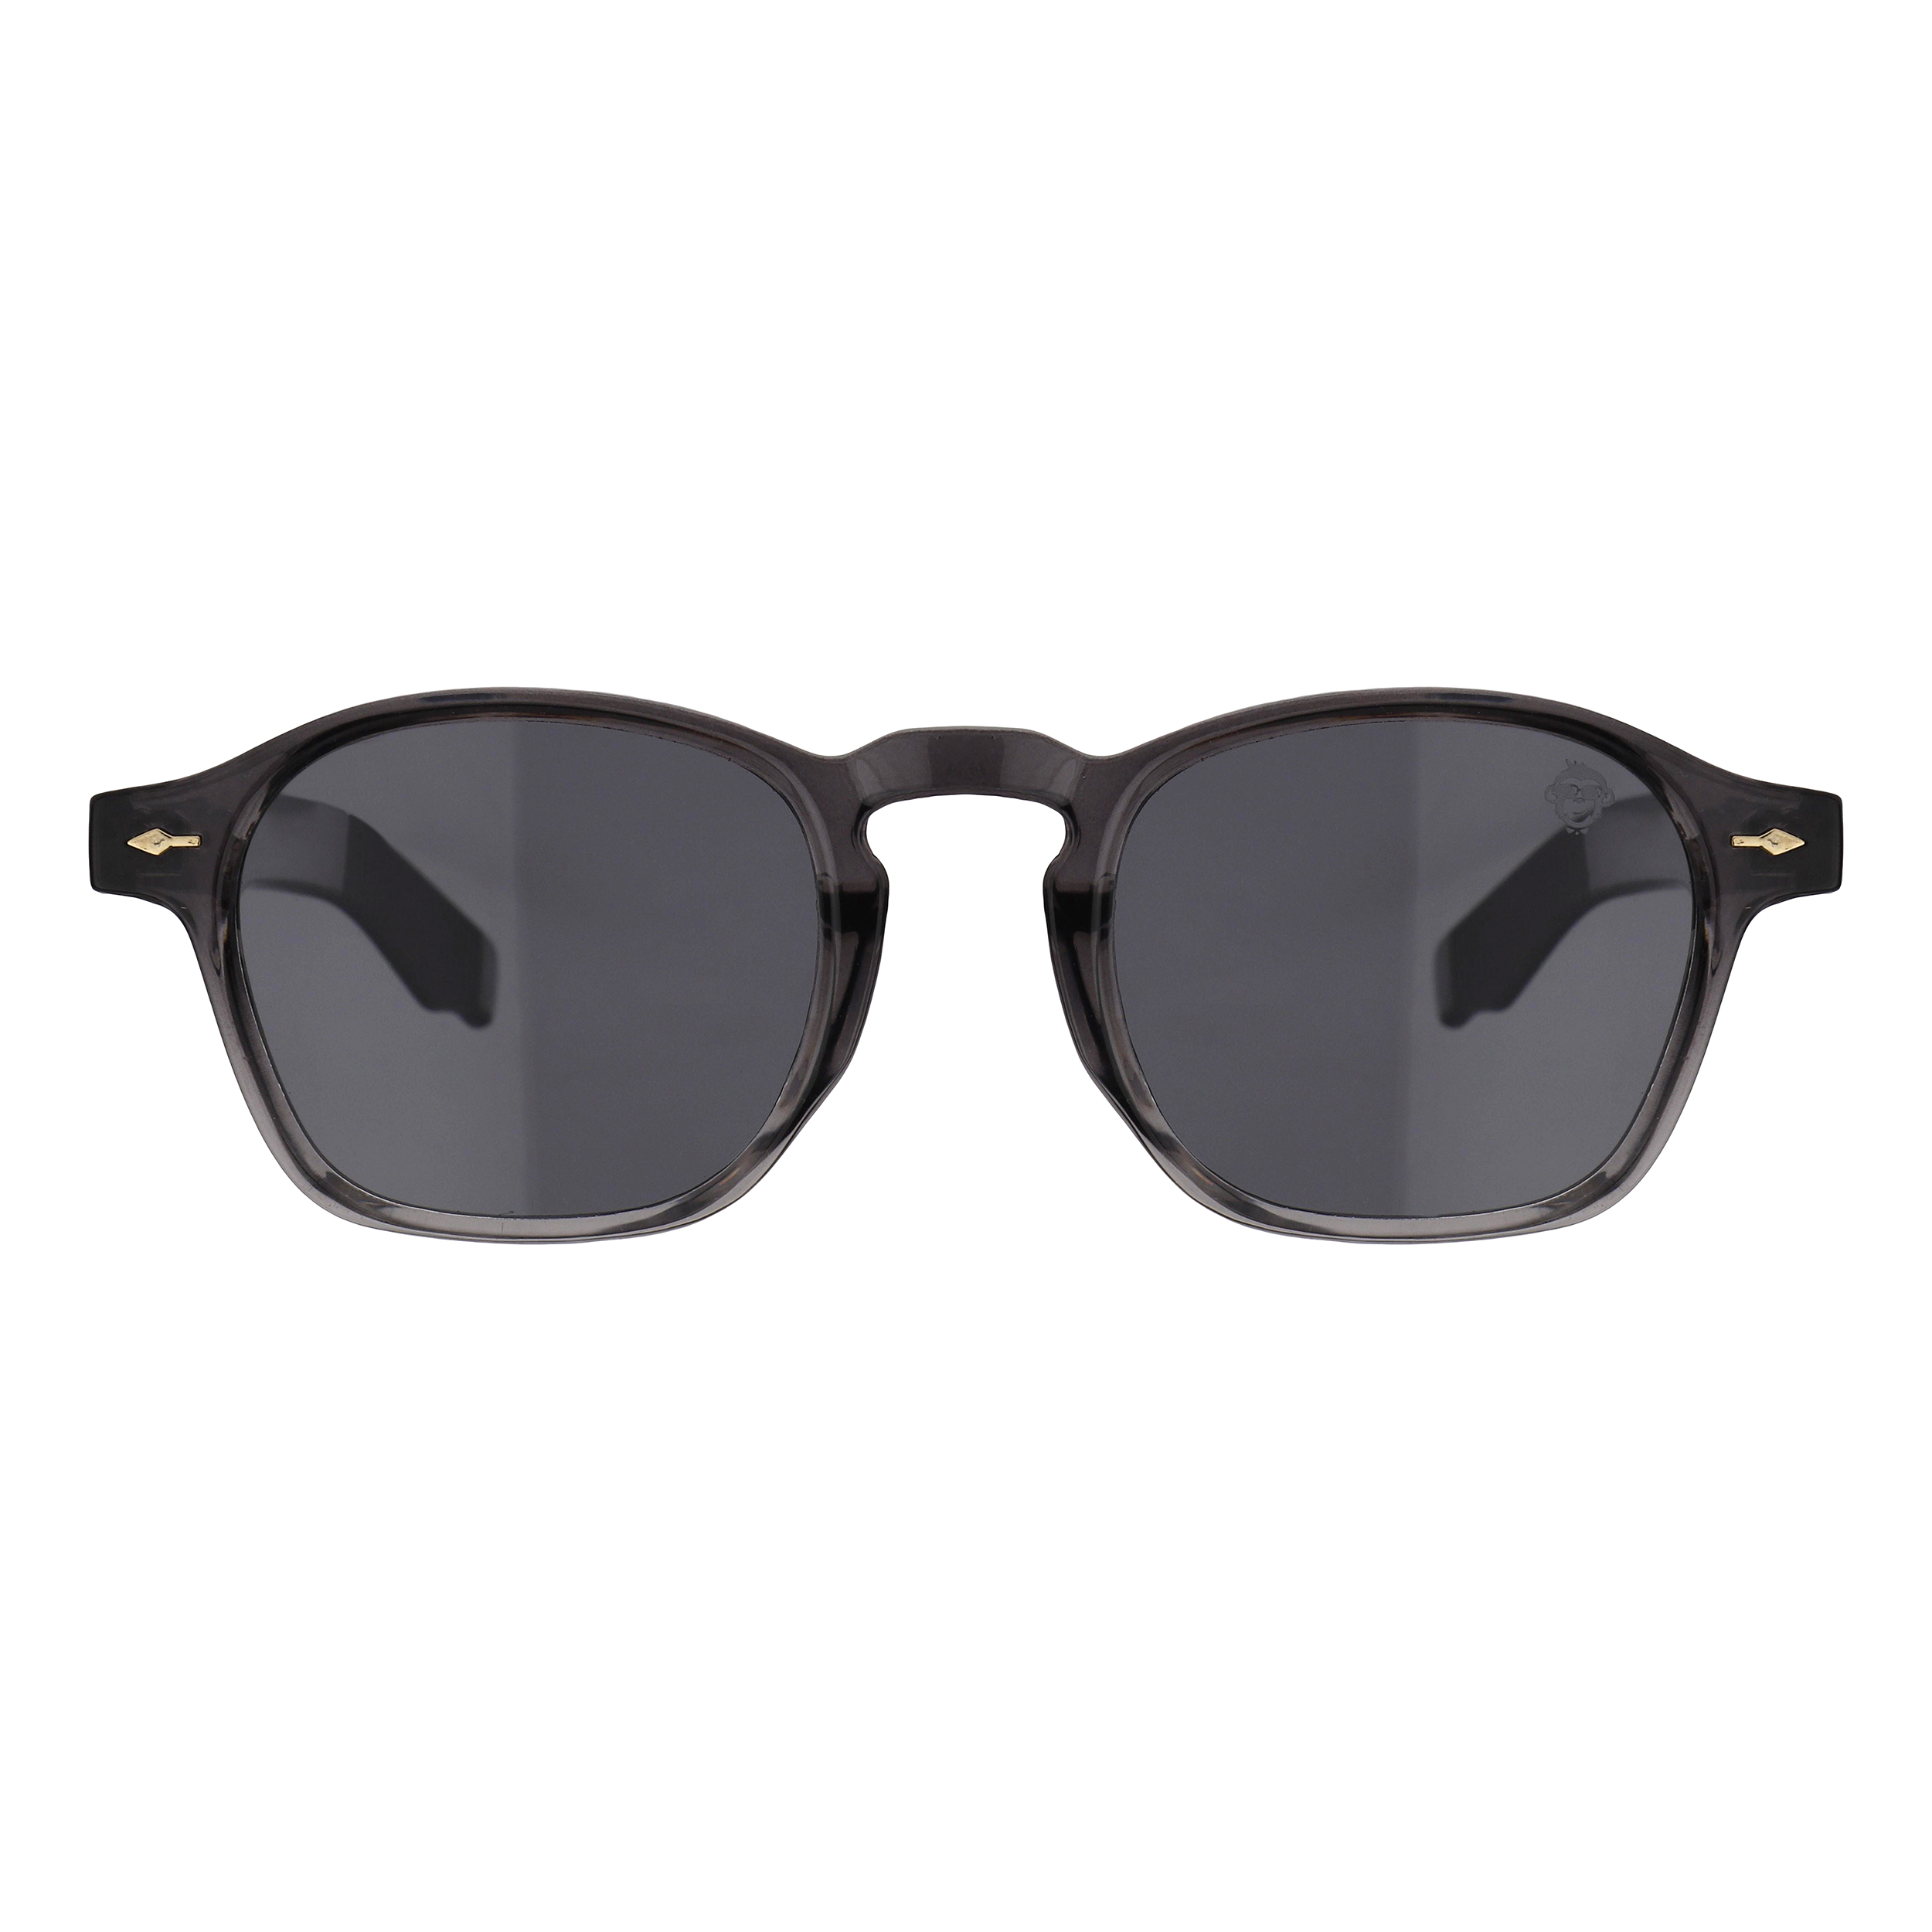 عینک آفتابی مستر مانکی مدل 6013 gr -  - 1